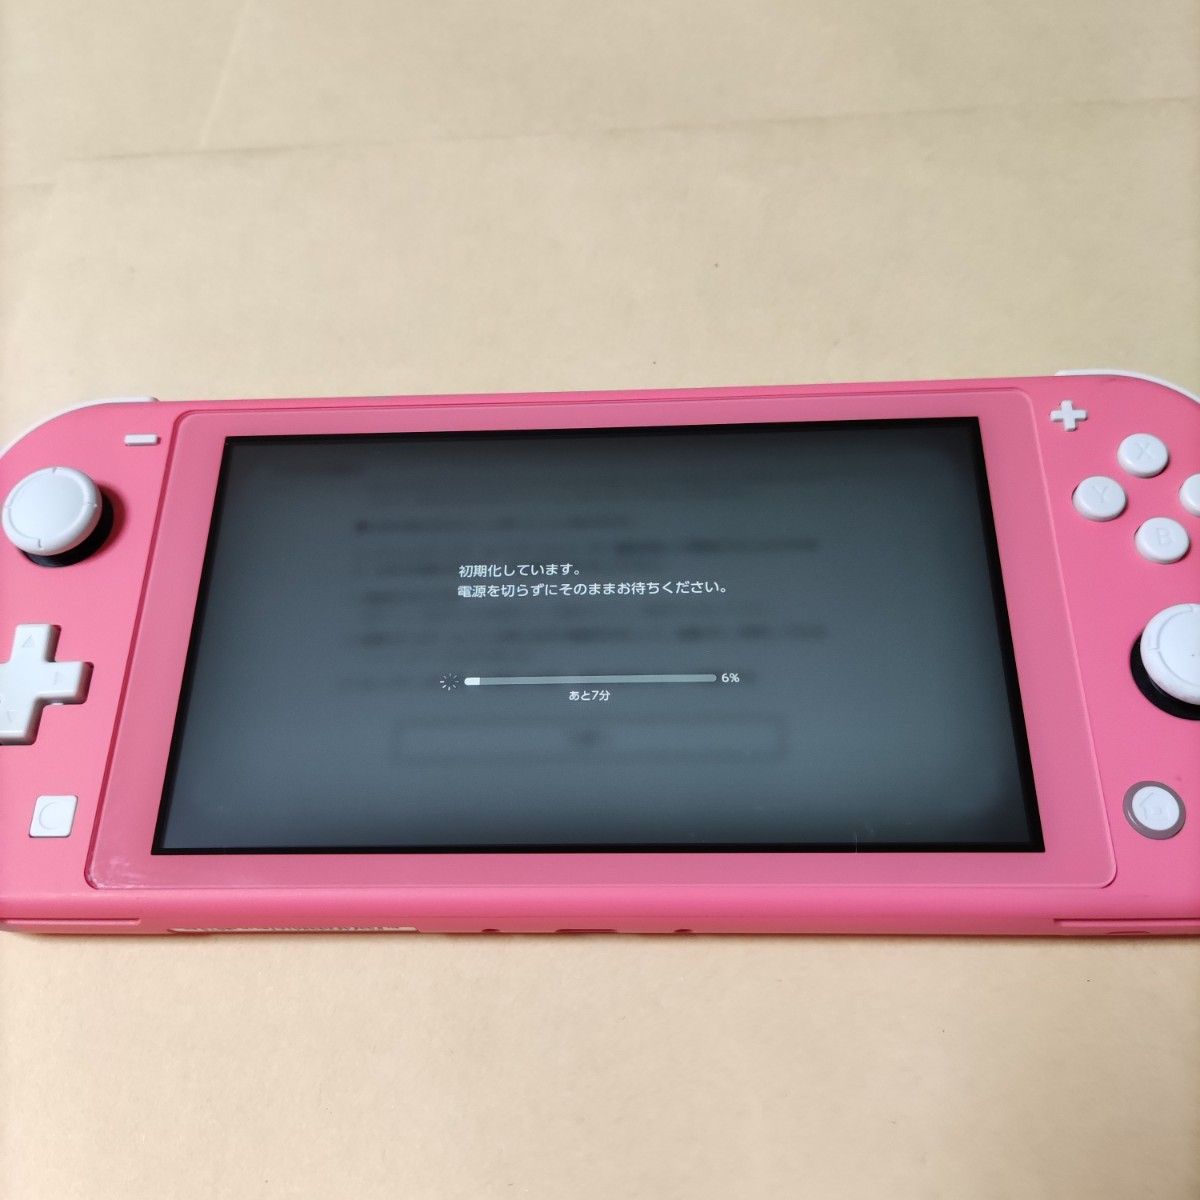 訳あり品 ジャンク品 ネット接続不可 Nintendo Switch Lite コーラル ピンク 本体のみ 2021年製